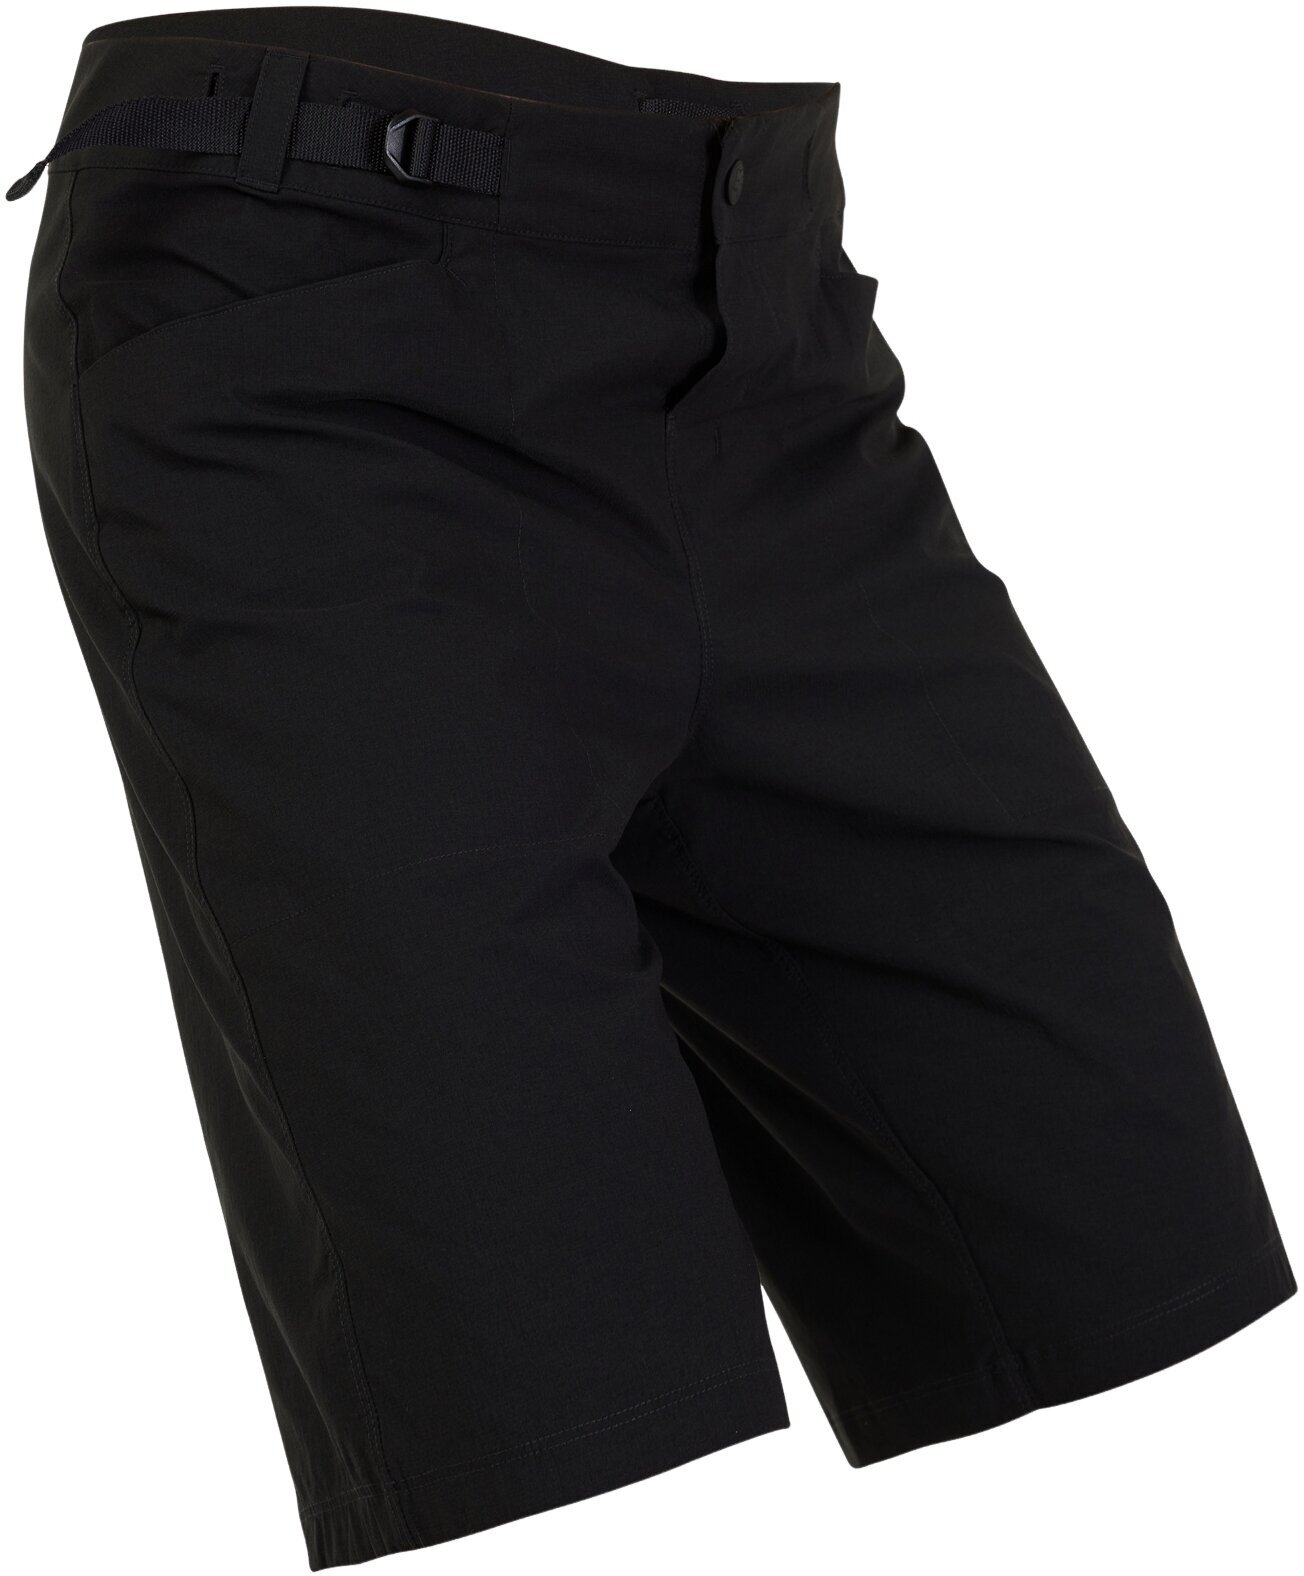 Cycling Short and pants FOX Ranger Lite Shorts Black 40 Cycling Short and pants